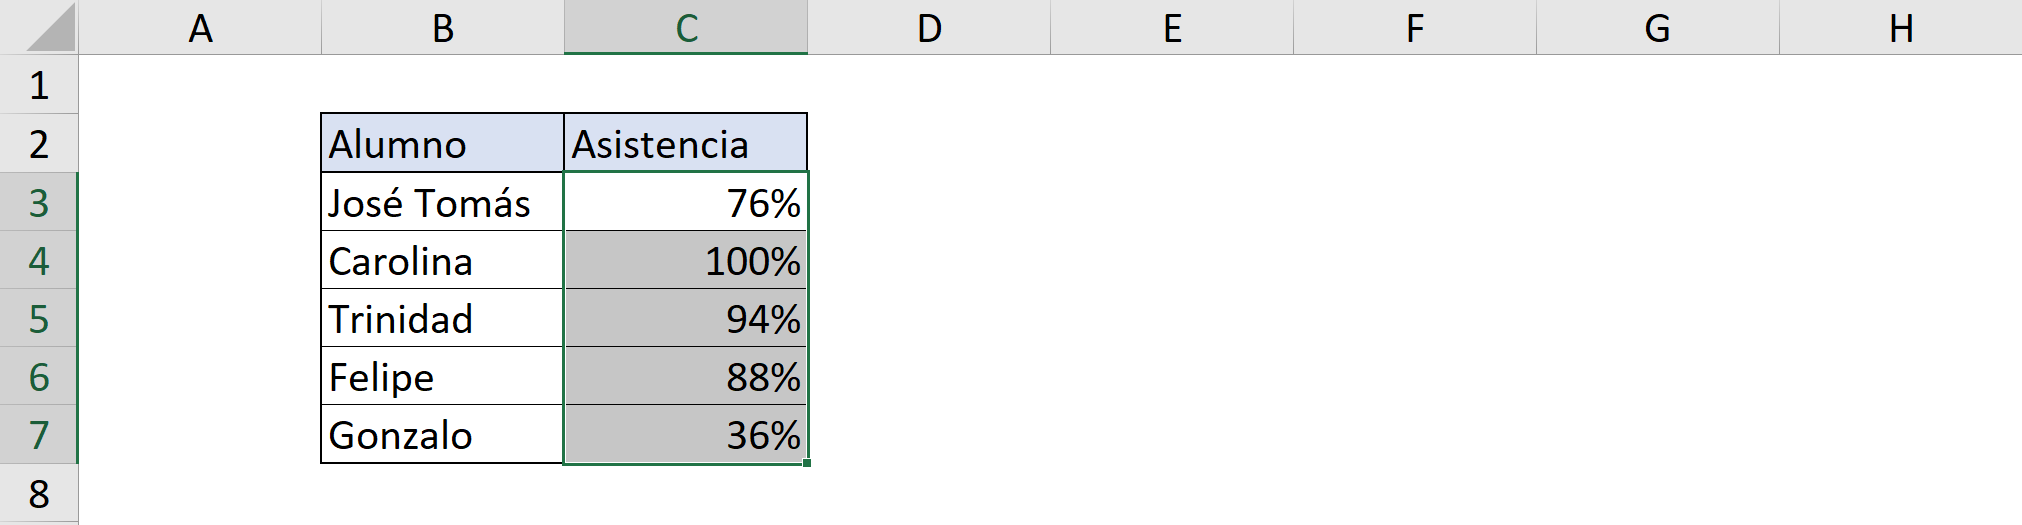 Example 3 Dynamic Range in Excel VBA